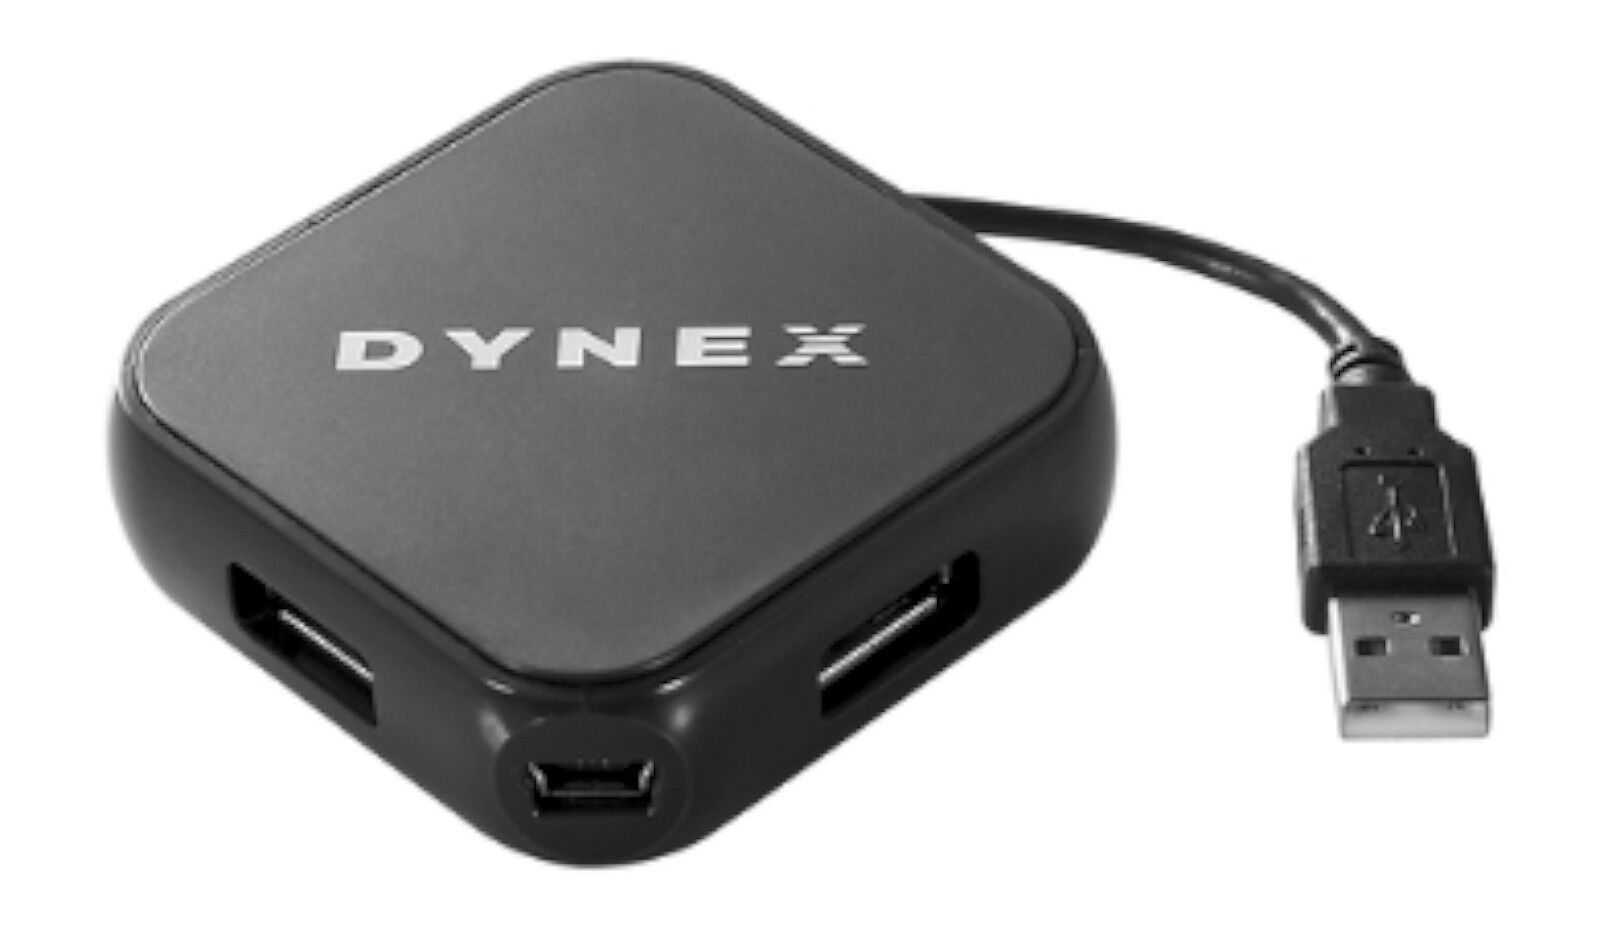 NEW Dynex DX-PCH5420 4-Port USB 2.0 Splitter Device Hub PC/Mac Computer BLACK